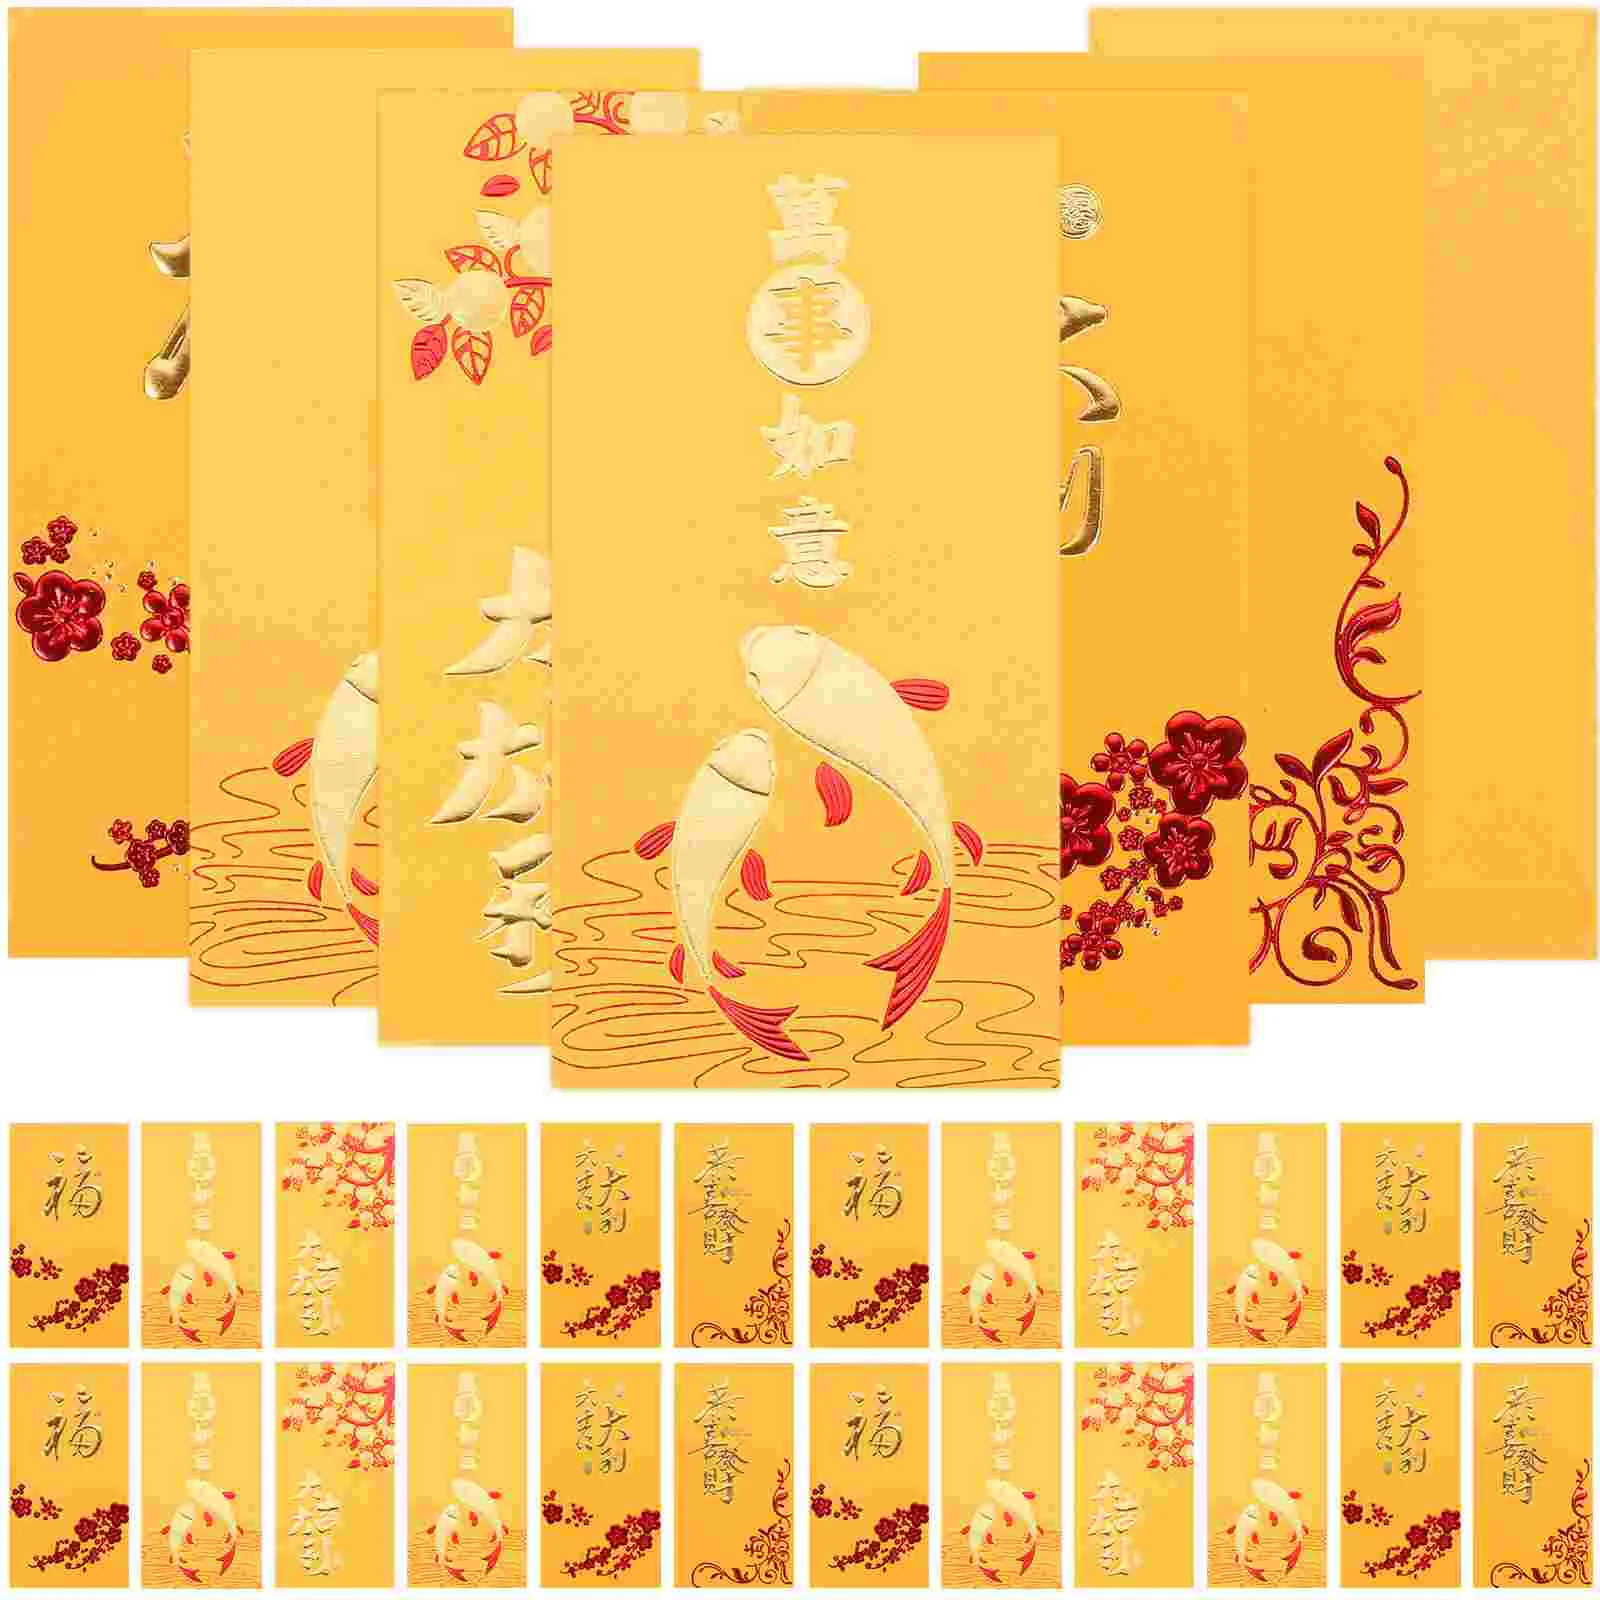 

Красные конверты для китайского праздника Весны золотого цвета, китайский карман для денег, кошелек для благословения нового года, Новогодний подарок